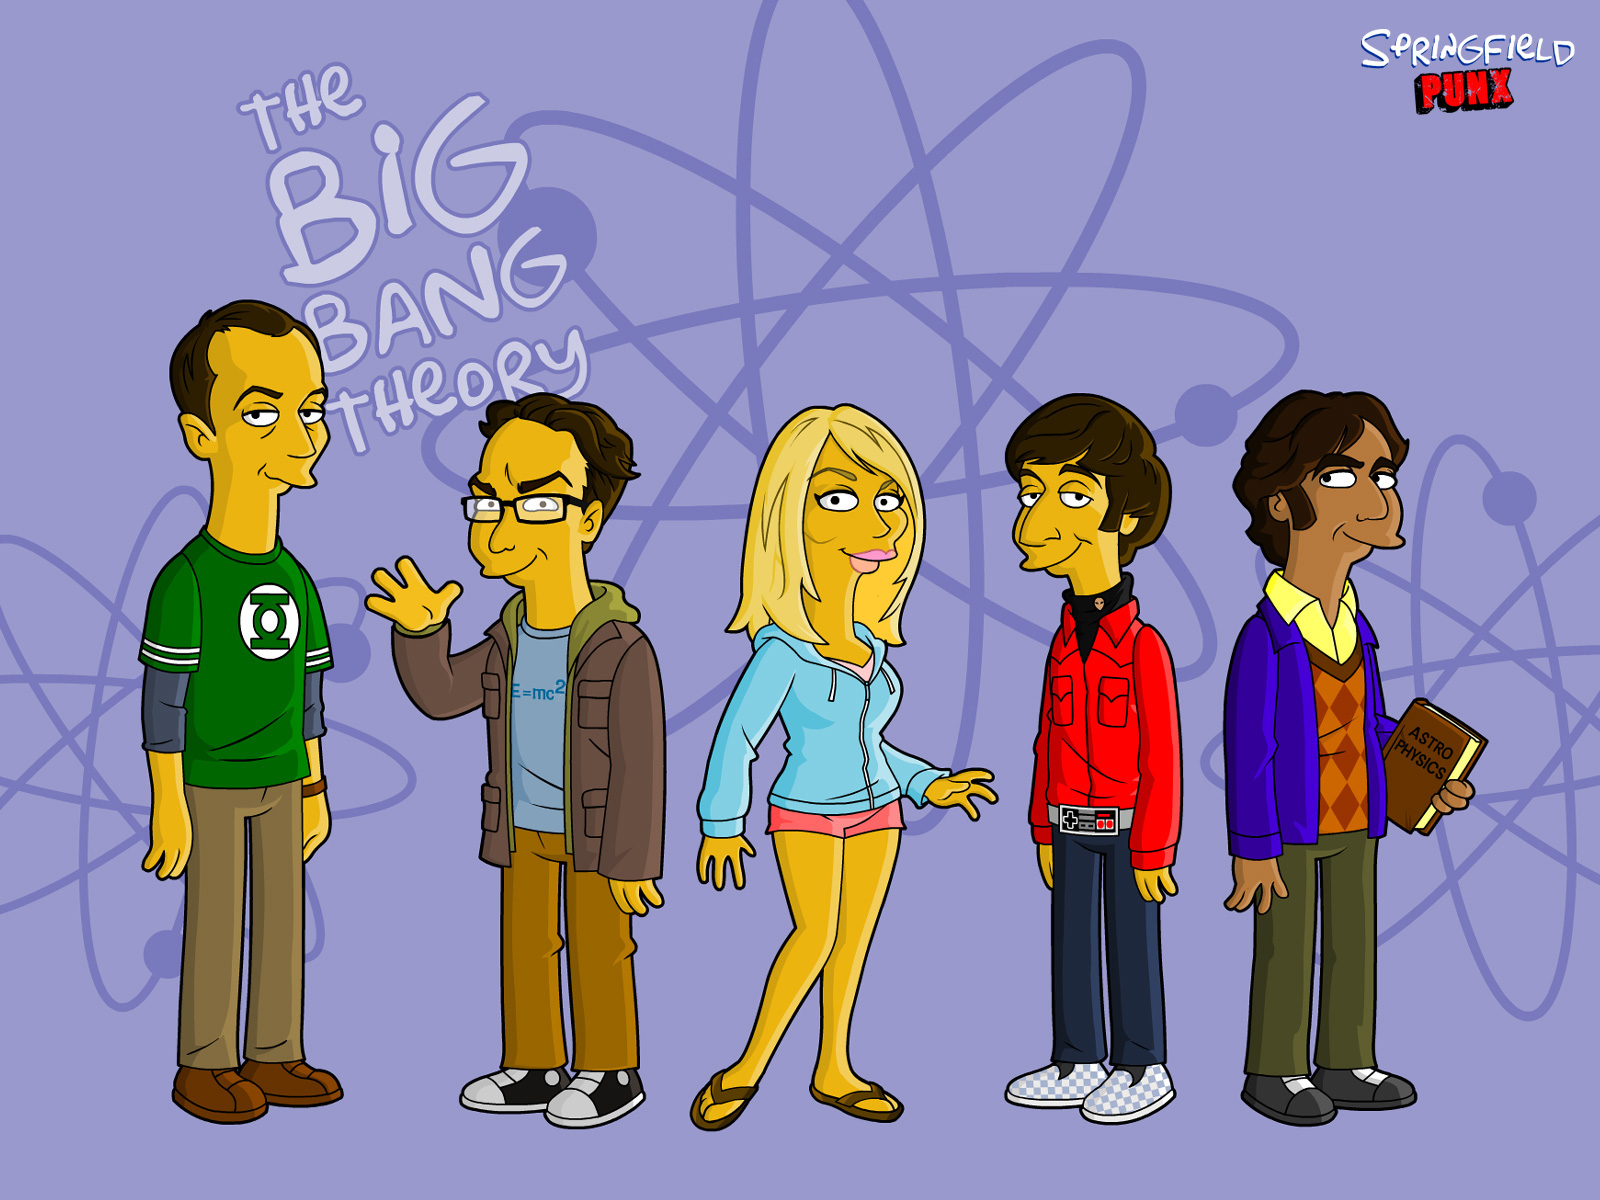 lo sfondo della teoria del big bang,cartone animato,cartone animato,gruppo sociale,animazione,illustrazione